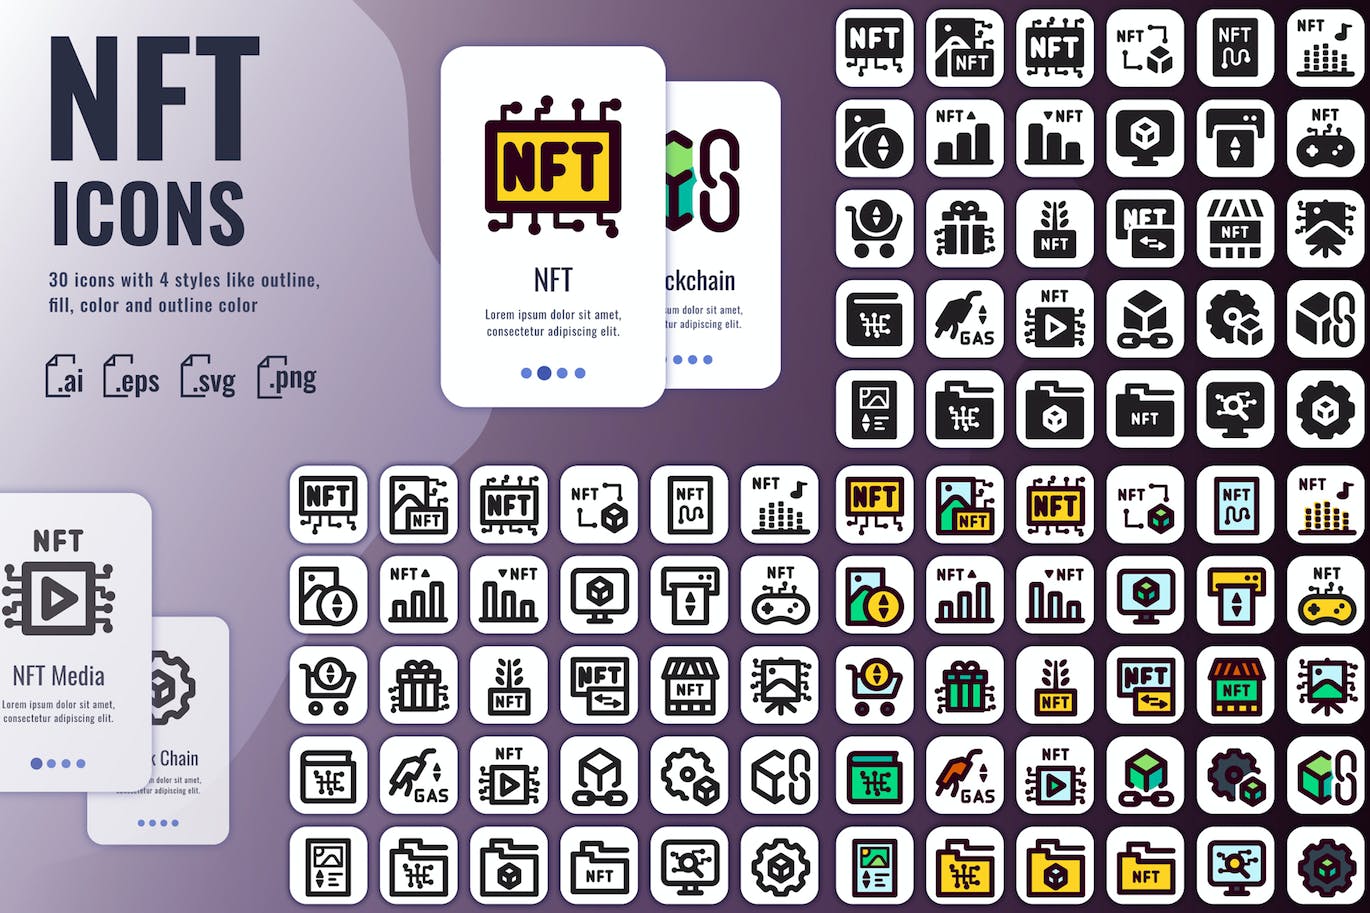 几种样式的NFT图标集 (AI,EPS,PNG,SVG)